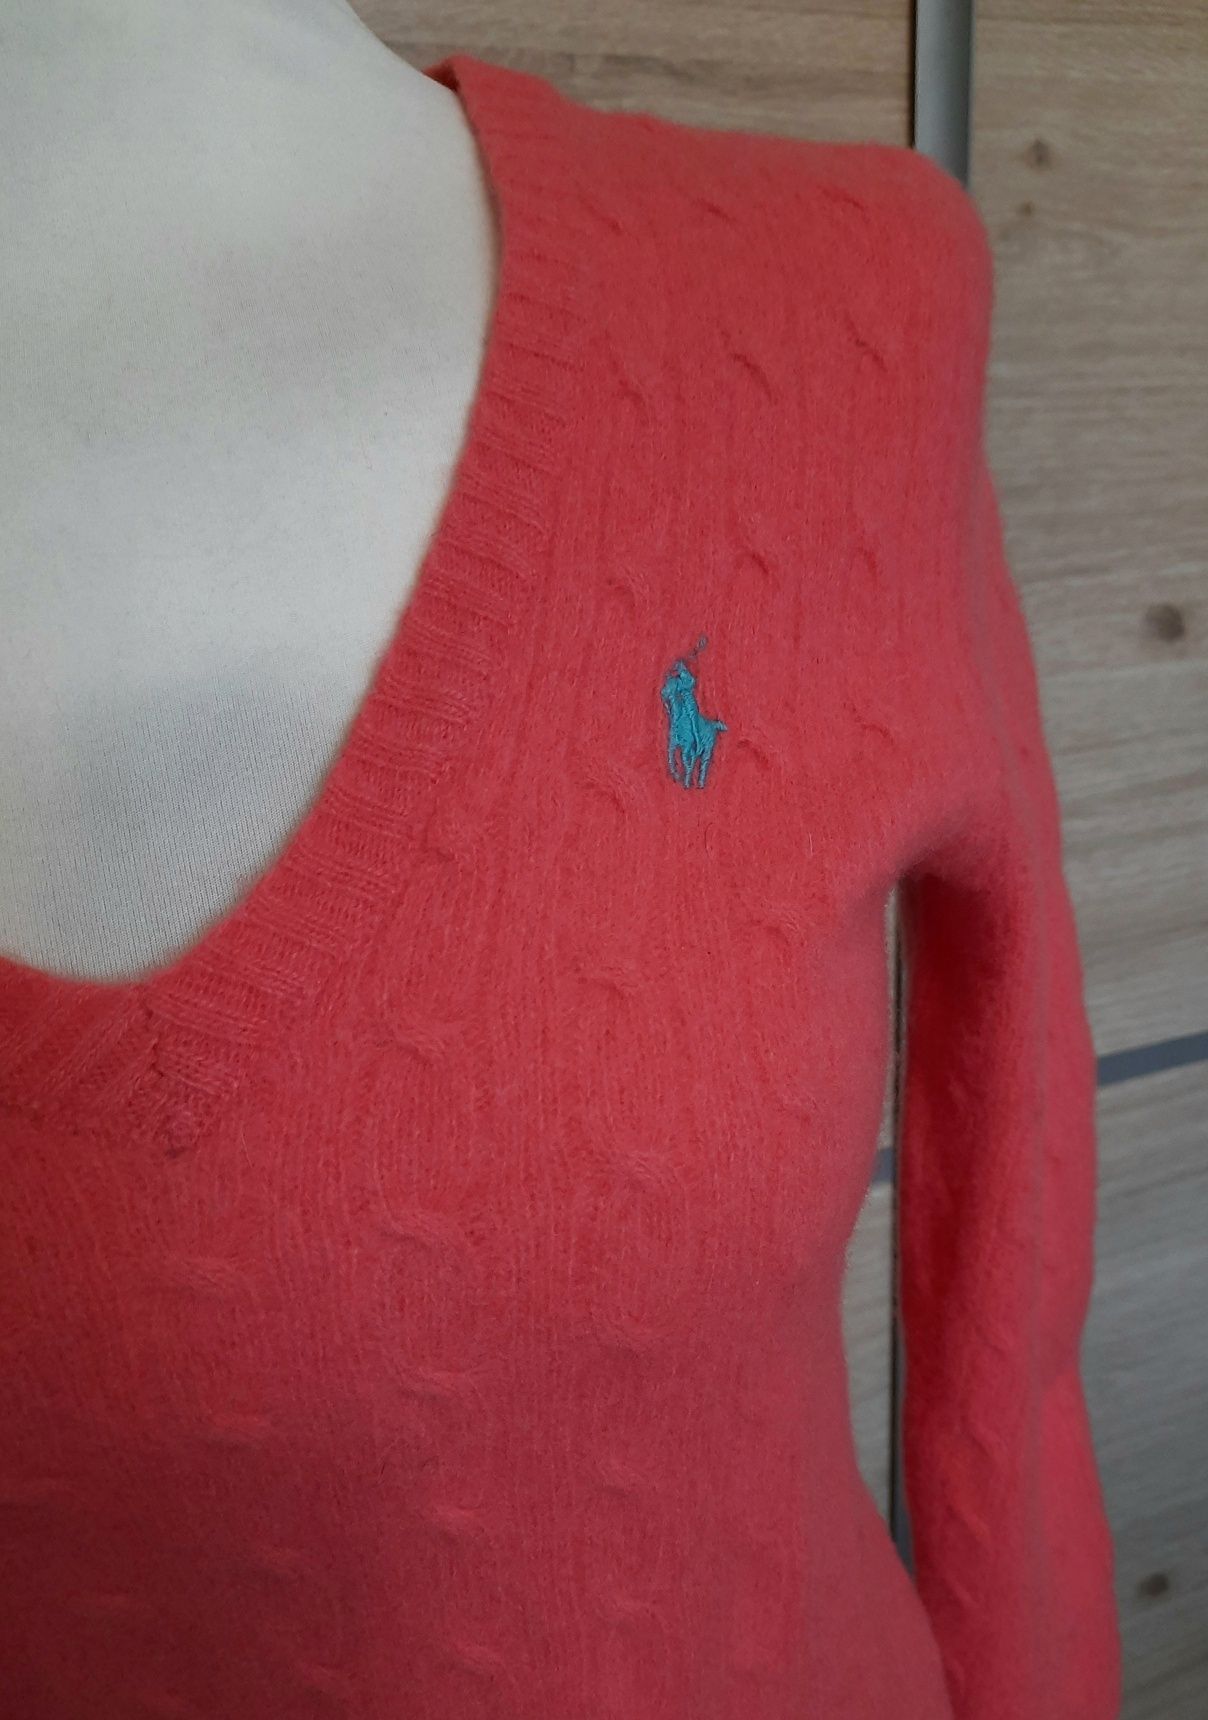 Sweter Ralph Lauren wełniany 100% merino wool różowy łososiowy damski